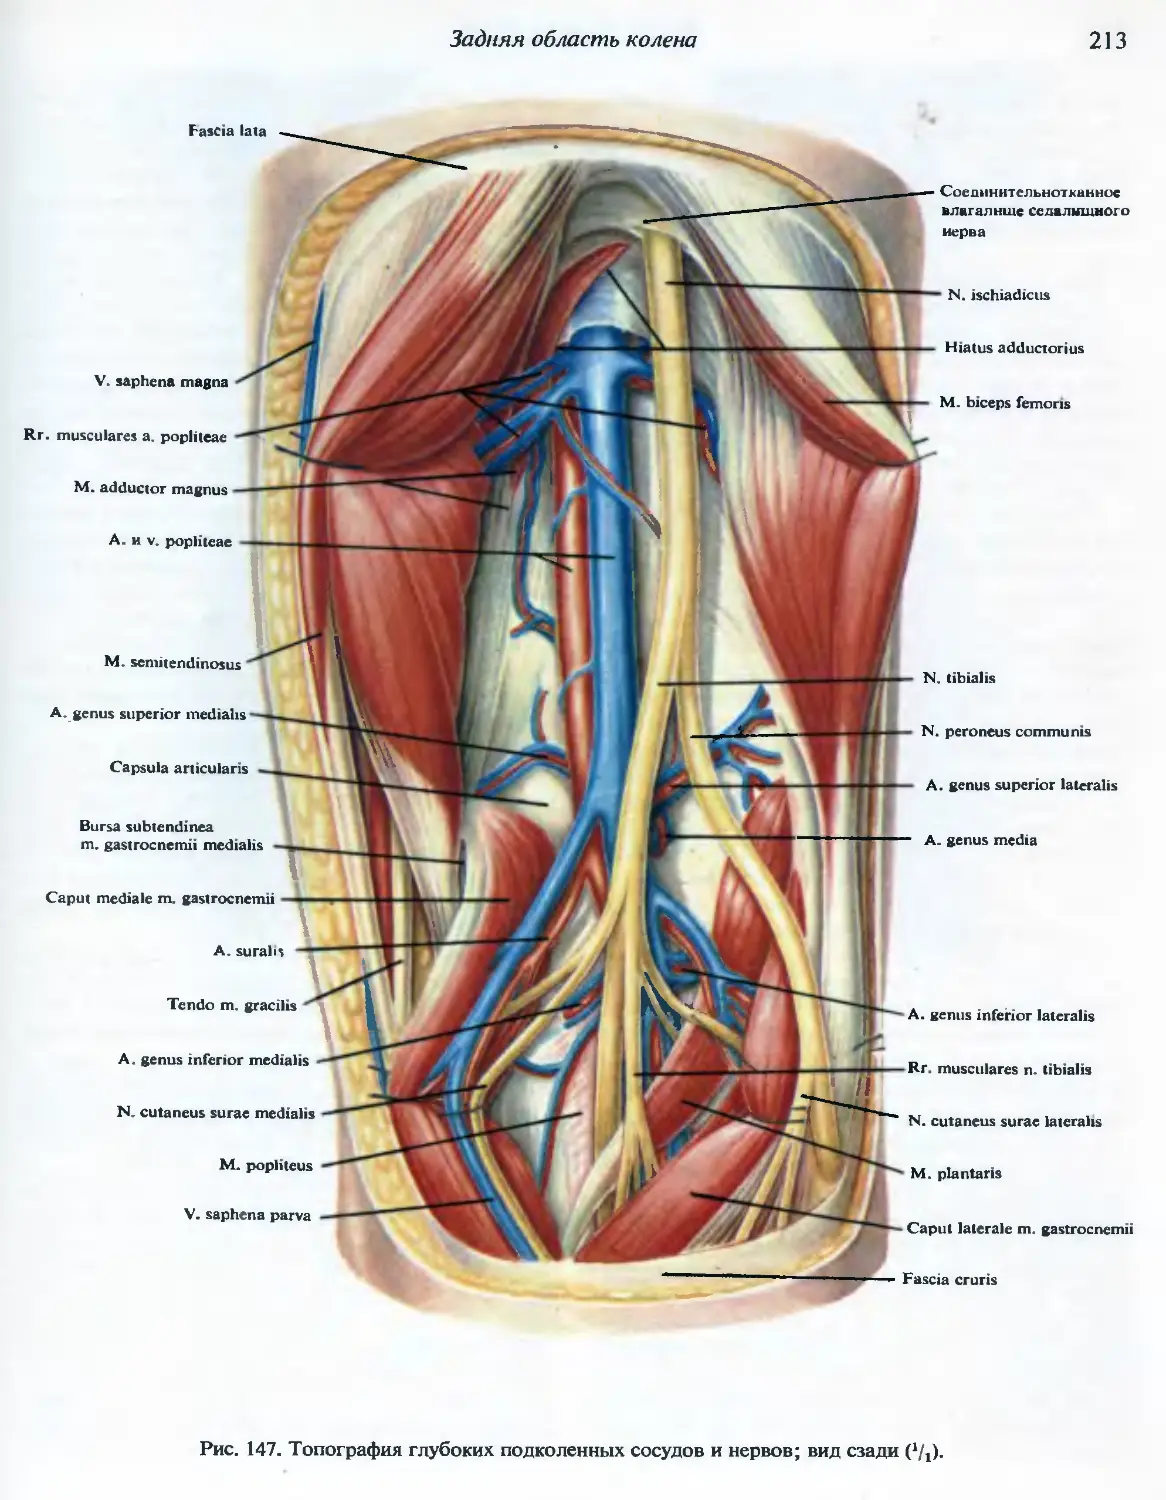 бедренная вена анатомия